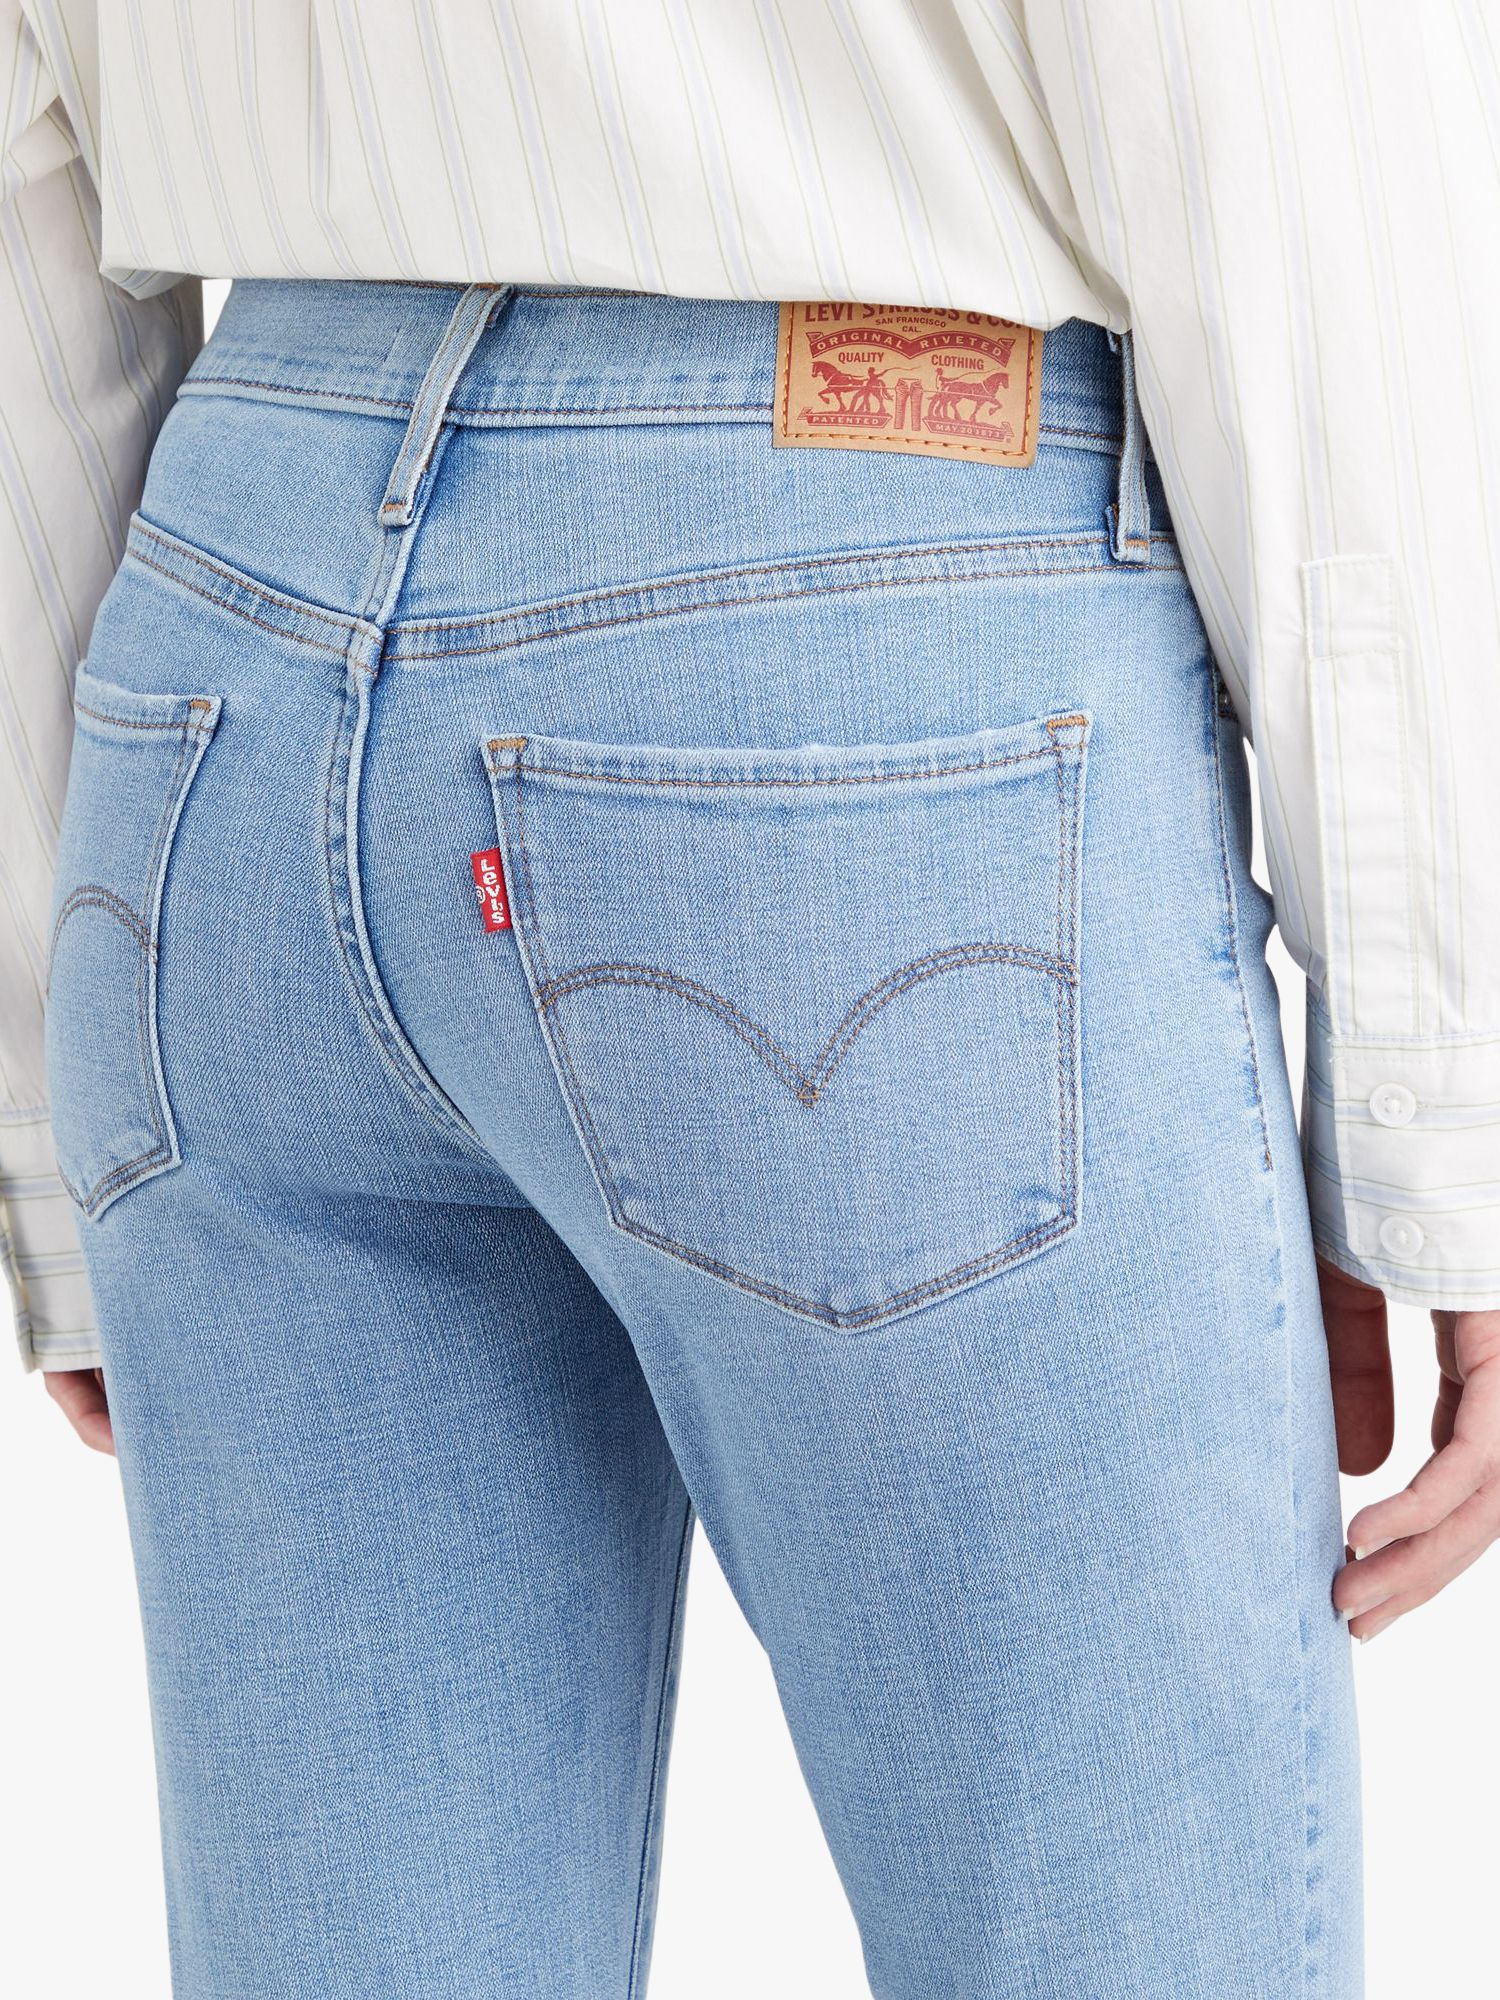 Levi's 311 Skinny Jeans, Lapis Sense at John Lewis & Partners